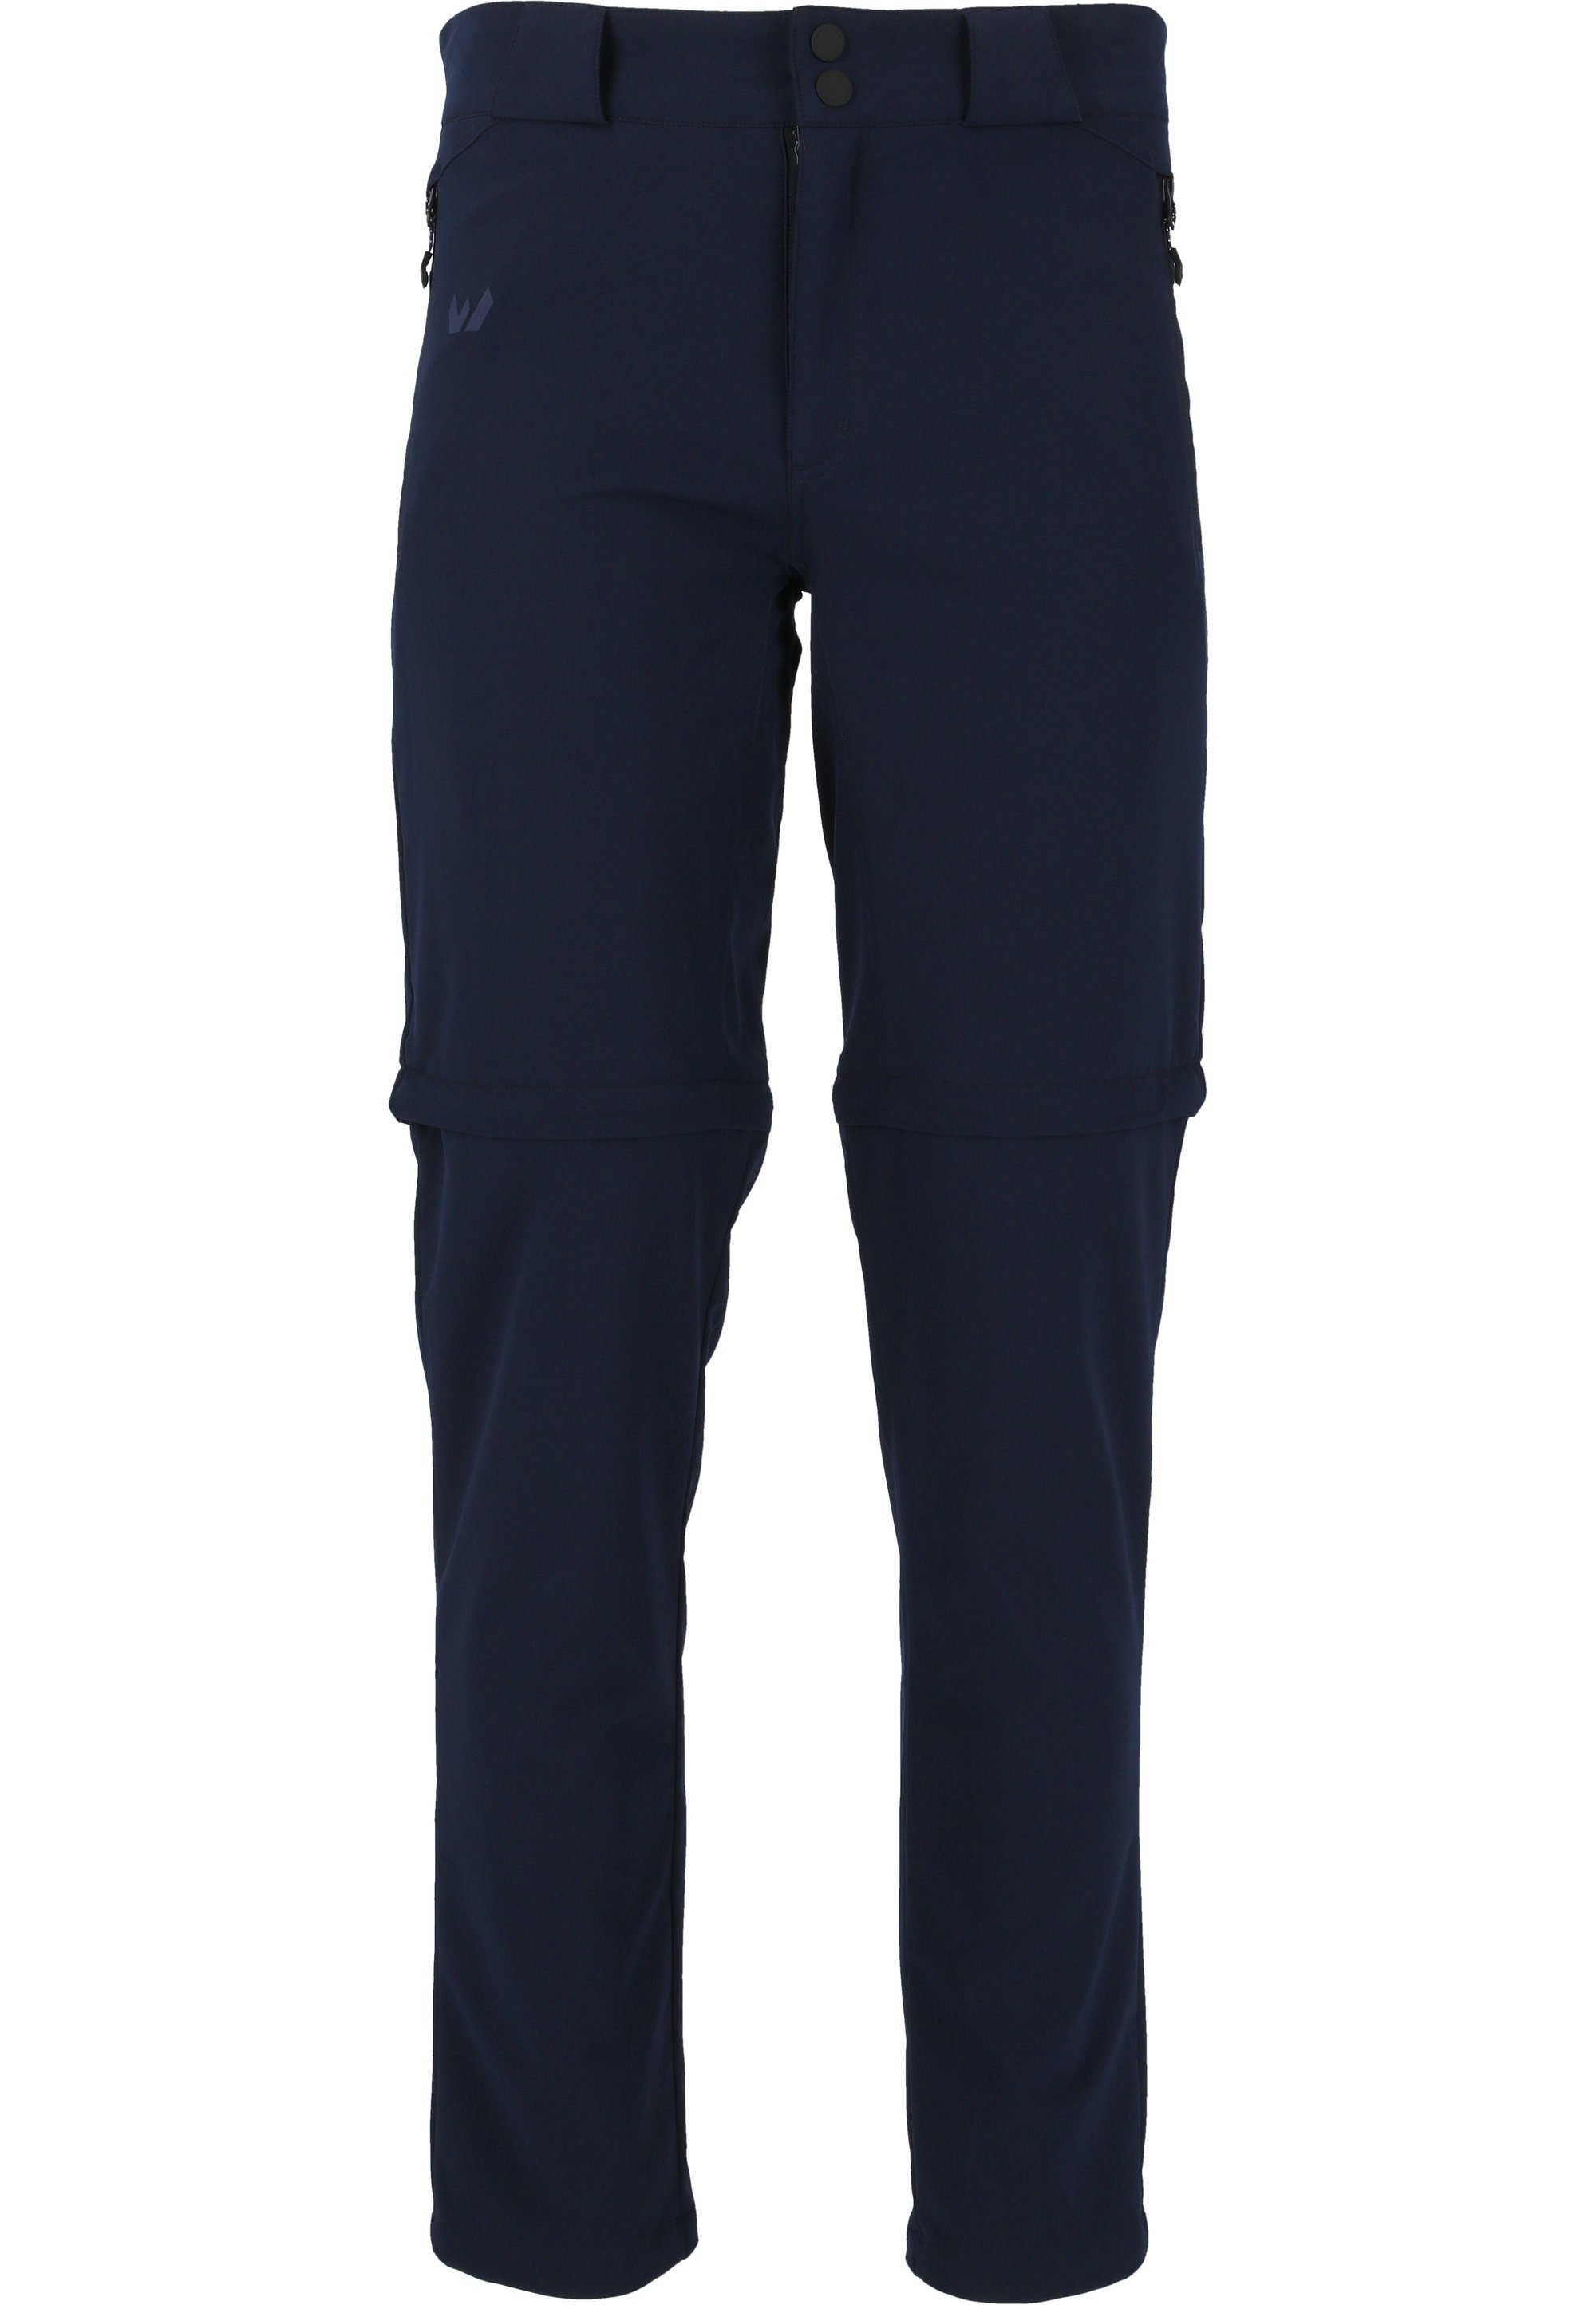 WHISTLER Outdoorhose Verwendung oder Hose Gerdi Shorts als dank dunkelblau Zip-Off-Funktion zur